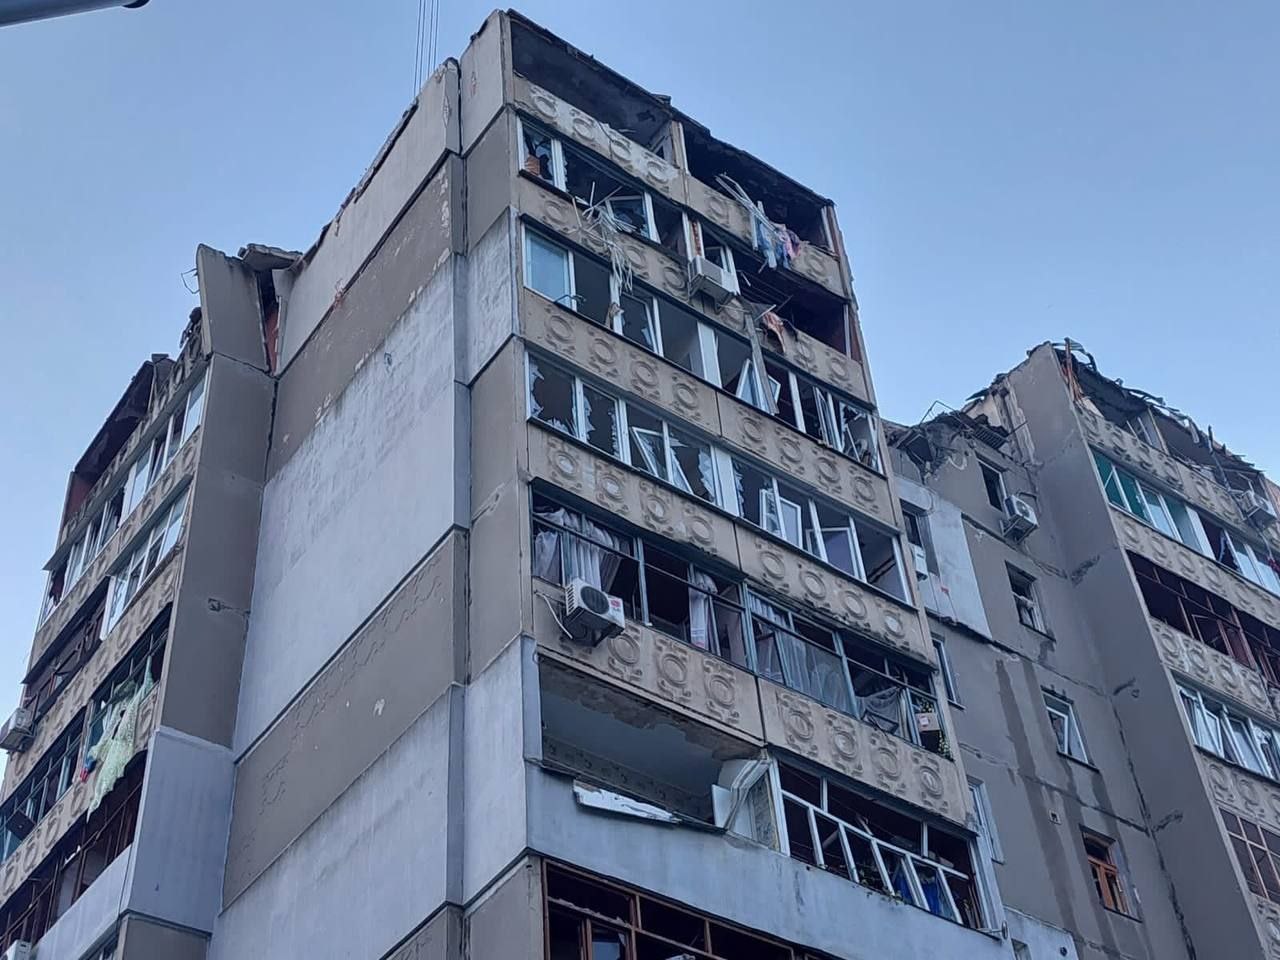 Ракета россиян ударила по девятиэтажке в Николаеве. Фото последствий 30 сентября